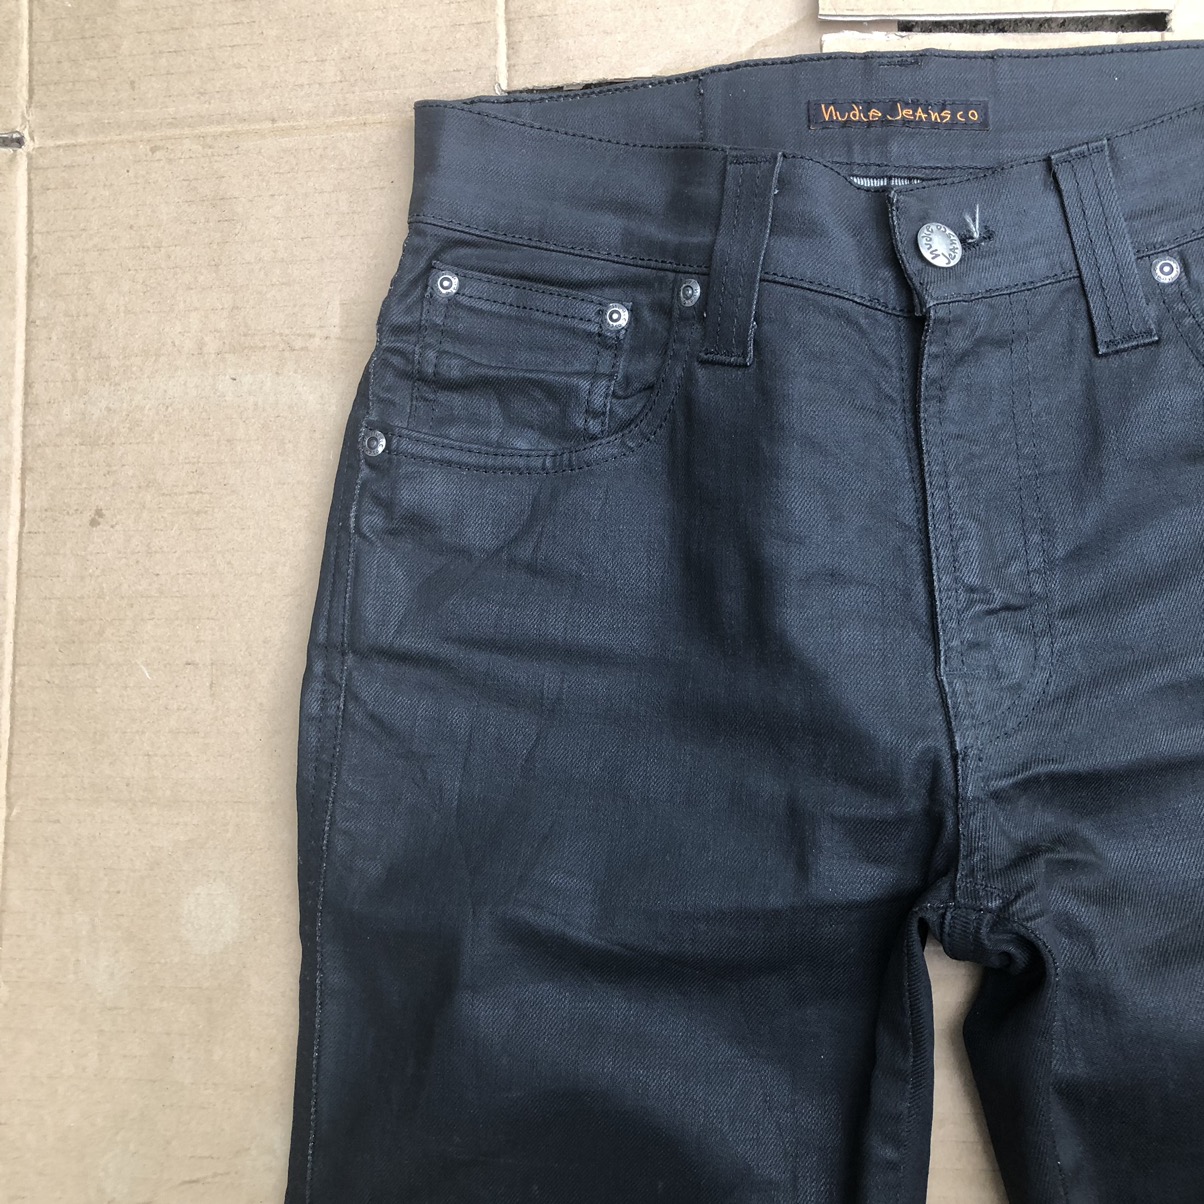 Nudie jeans slim Jim dry black coated Travis Scott - 4